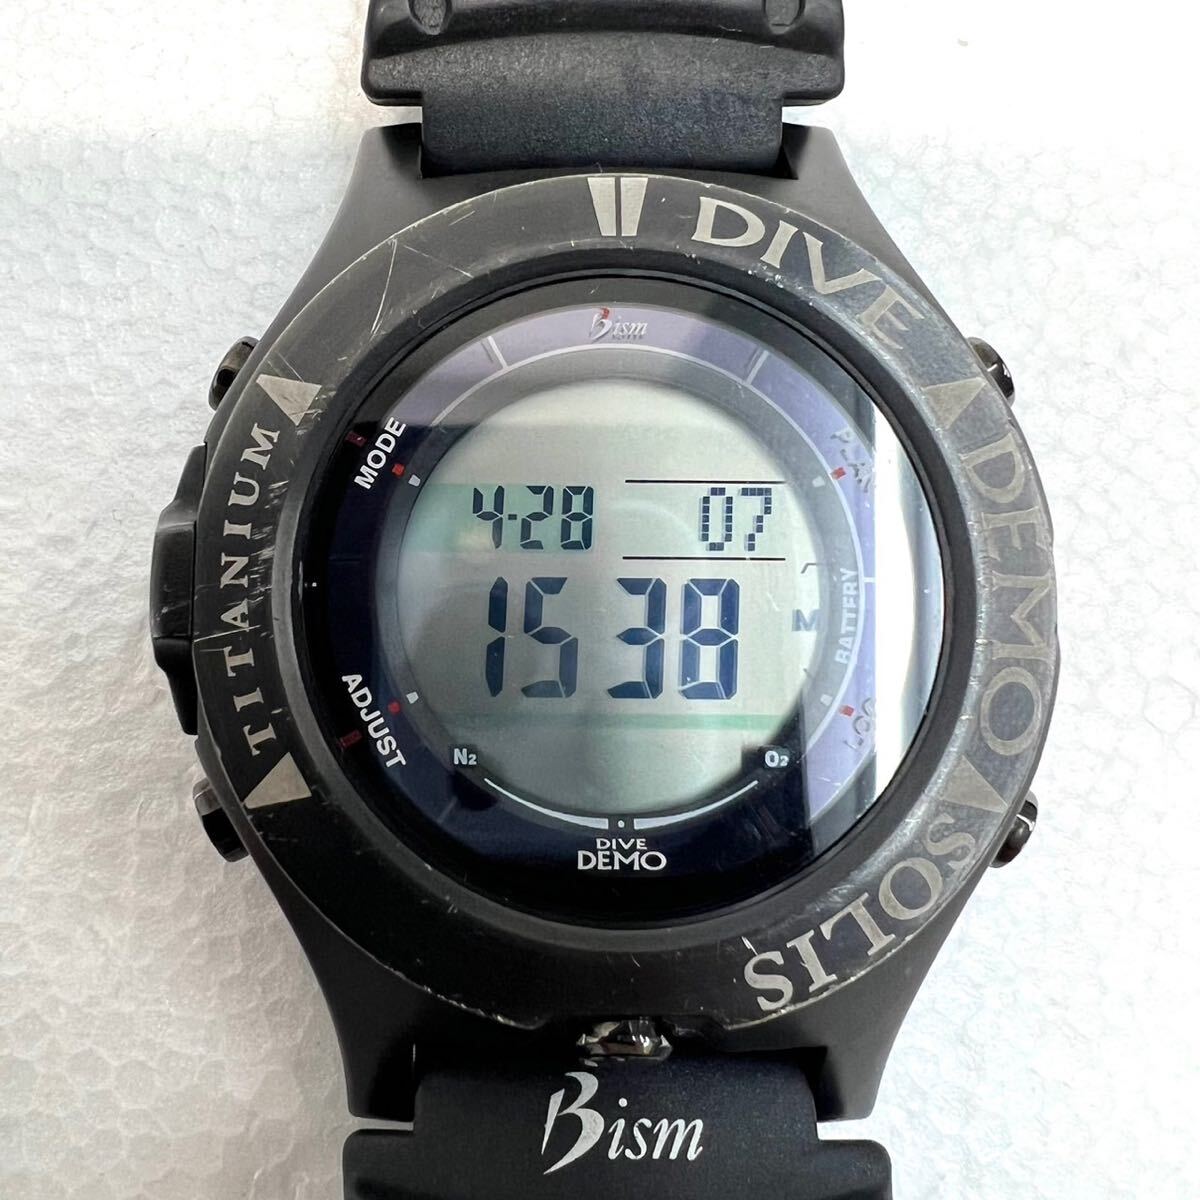 【1円スタート】Bism ビーイズム ダイブコンピューター 4GS DIVE DEMO SOLIS TITANIUM BLACK BELT 腕時計 ダイビング ウォッチの画像1